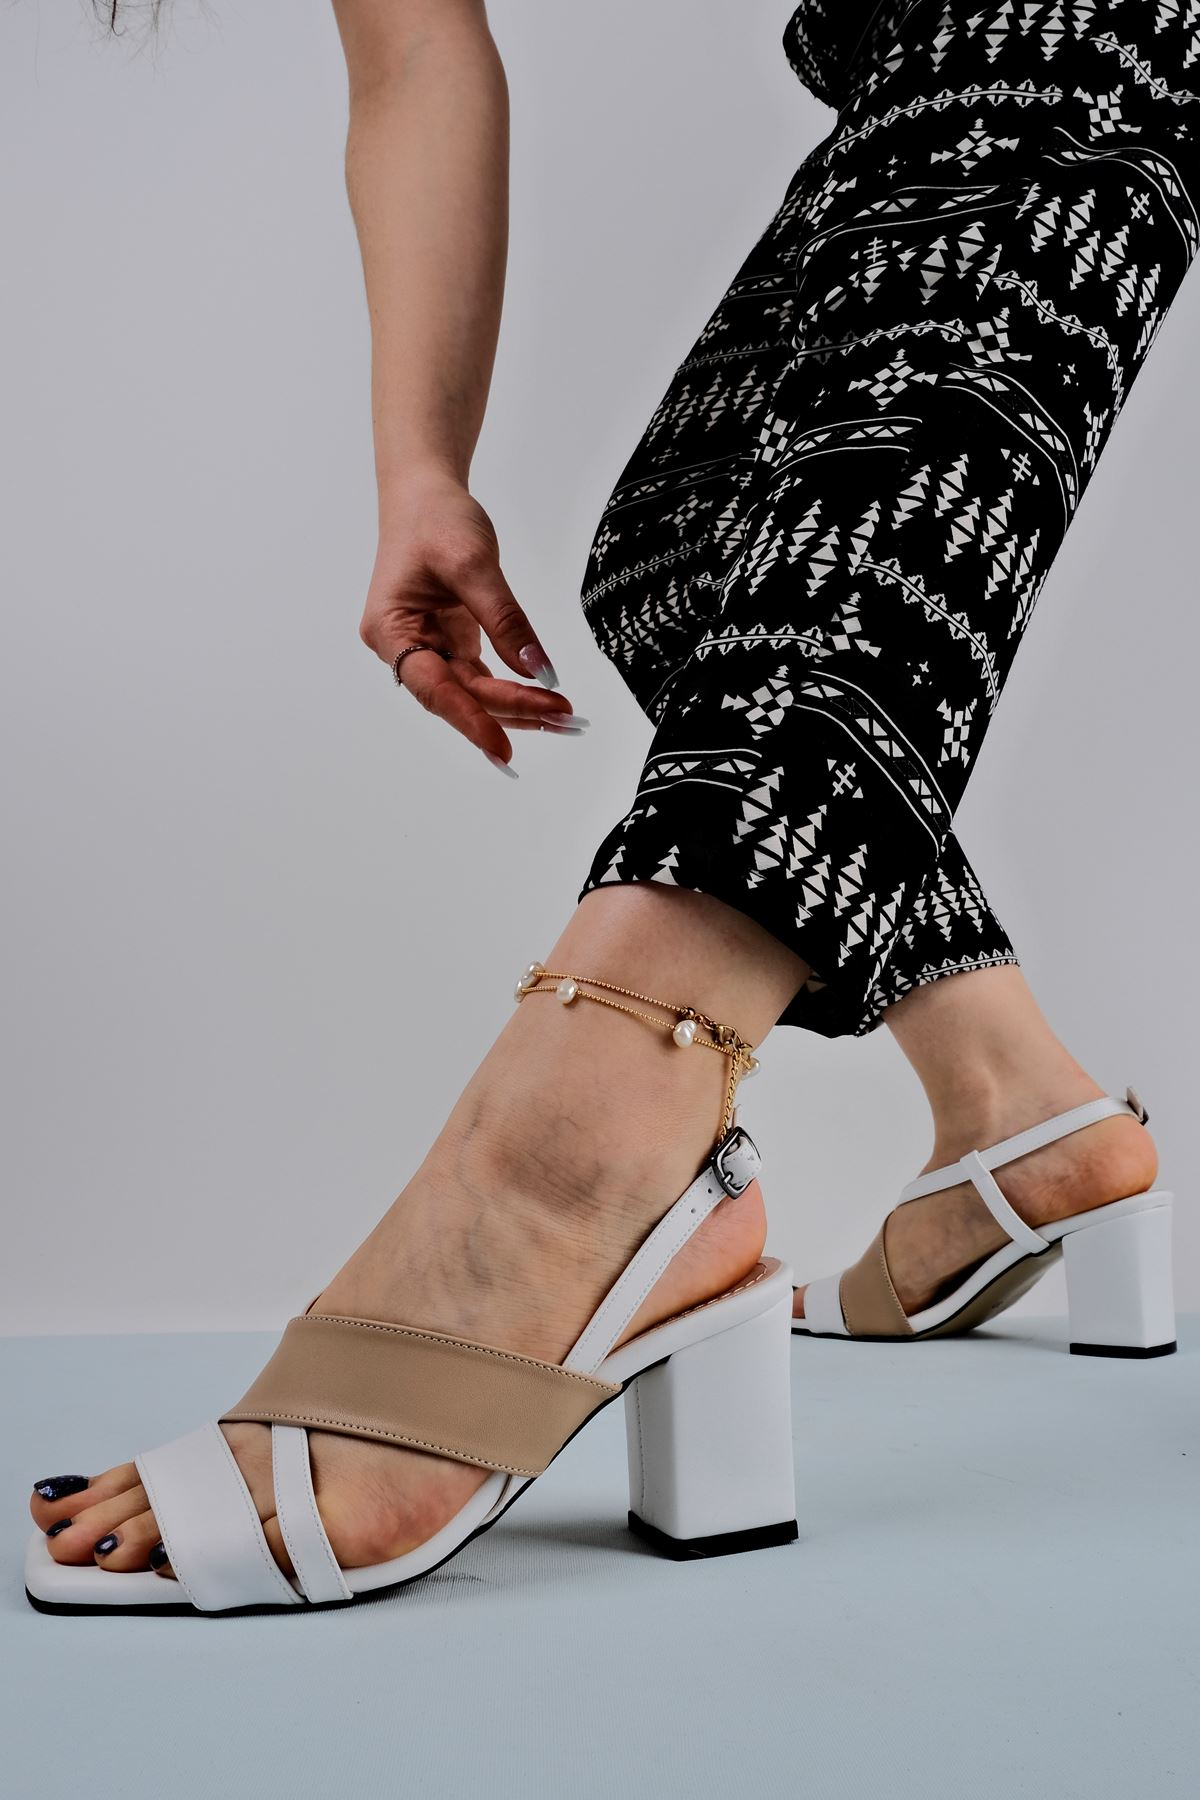 Kadın Topuklu Ayakkabı Renkli Çapraz Detaylı-Krem